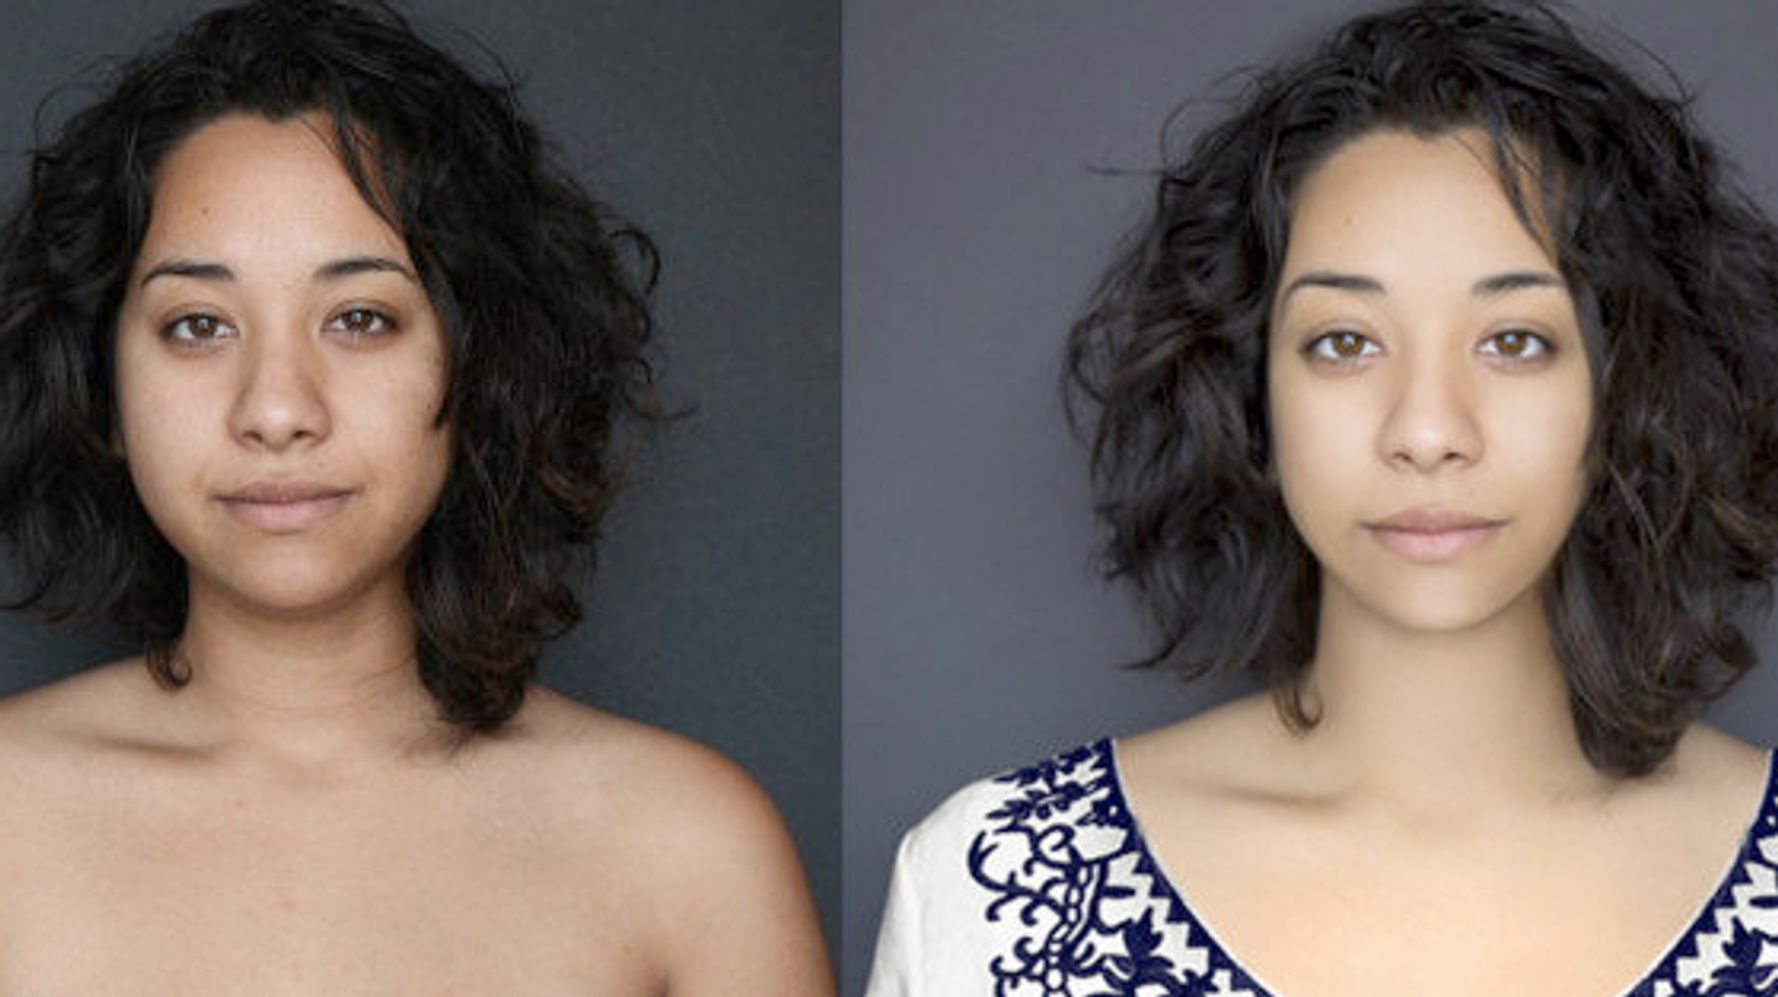 日本人と黒人のハーフ女性の顔を18カ国でフォトショップ加工してみたら ちょっと考えさせられる結果になった 画像 ハフポスト News